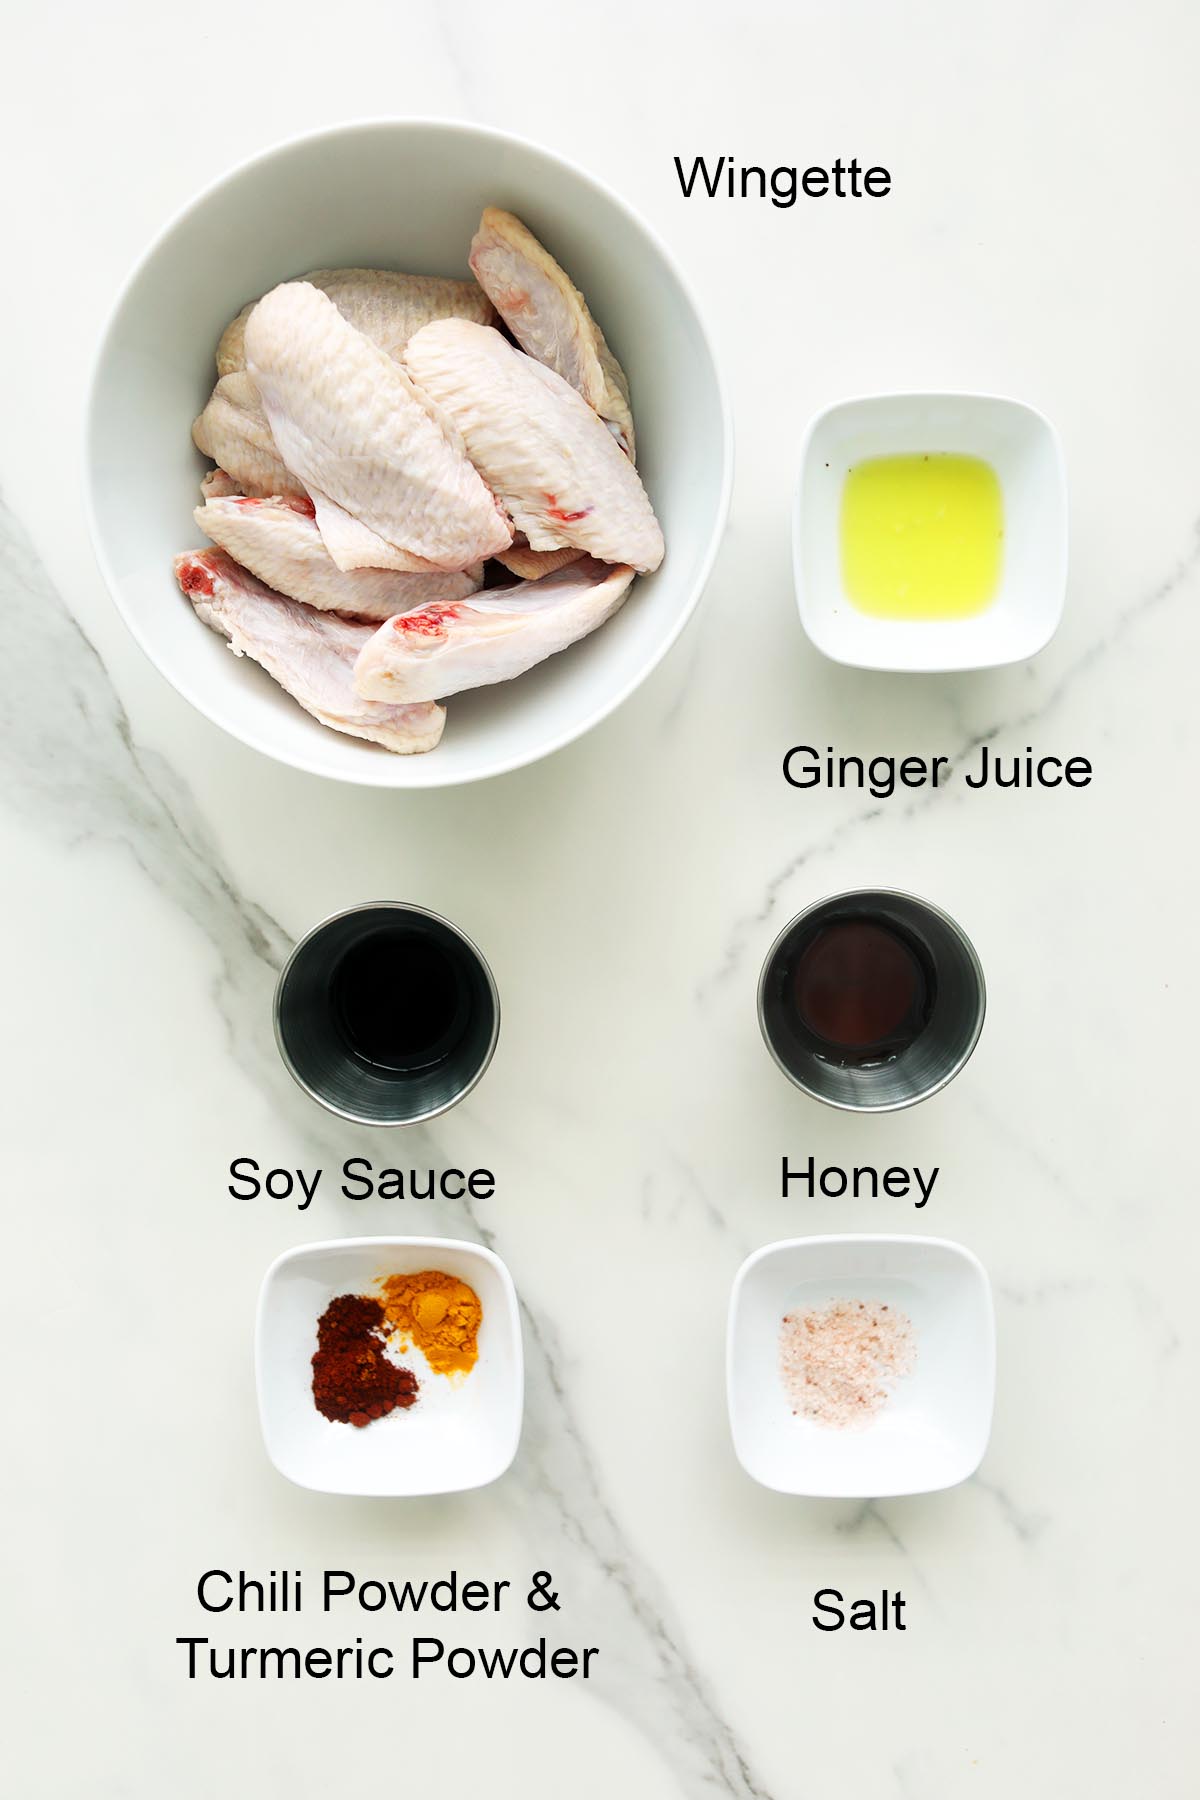 Ingredients for honey wings. 